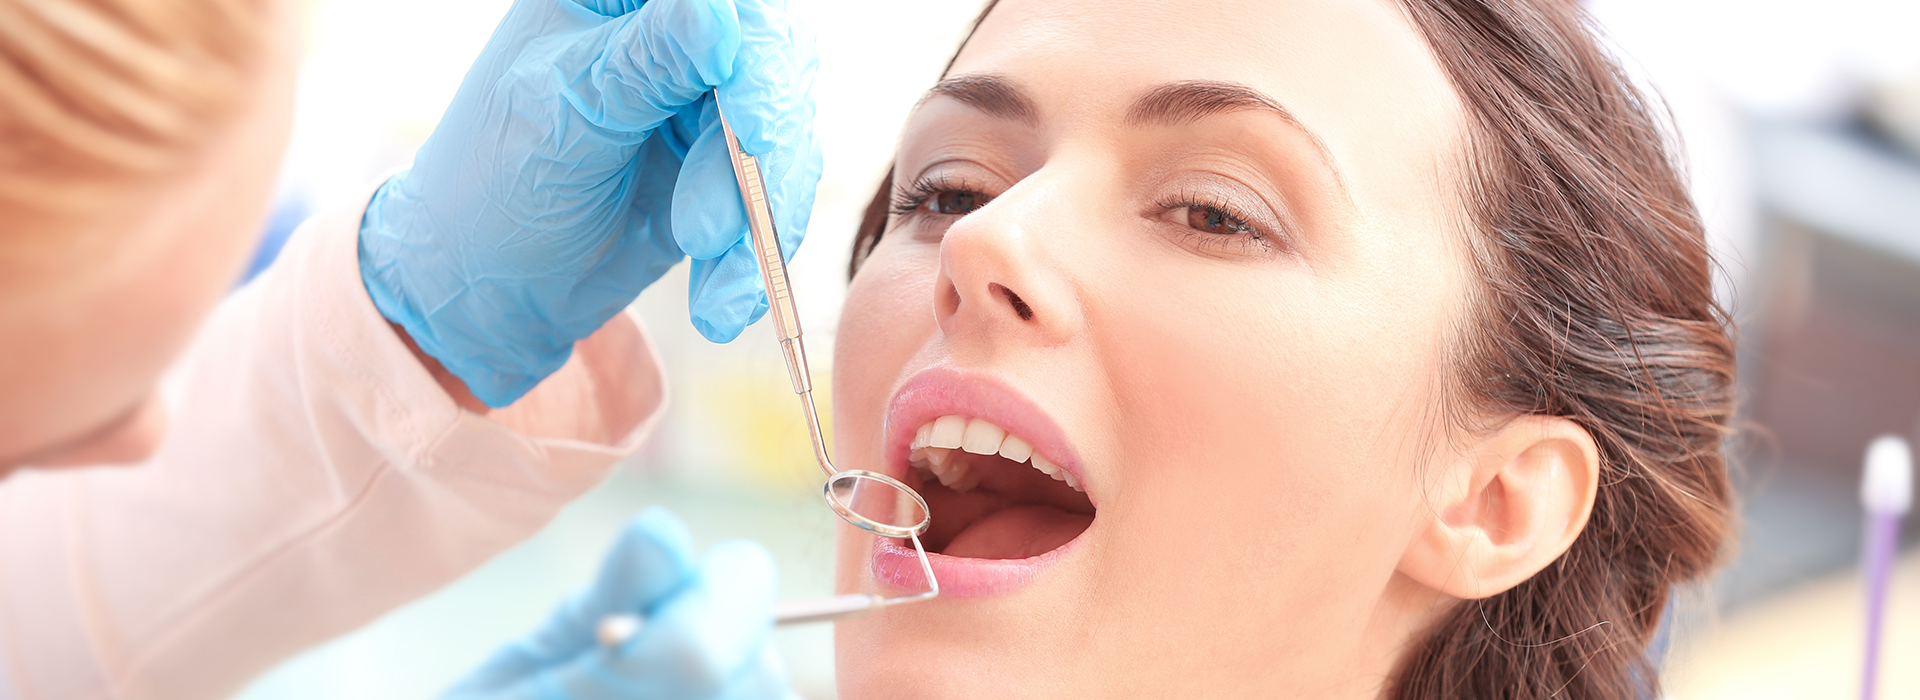 Norwalk Dental Center | Dentures, Emergency Treatment and Dental Fillings